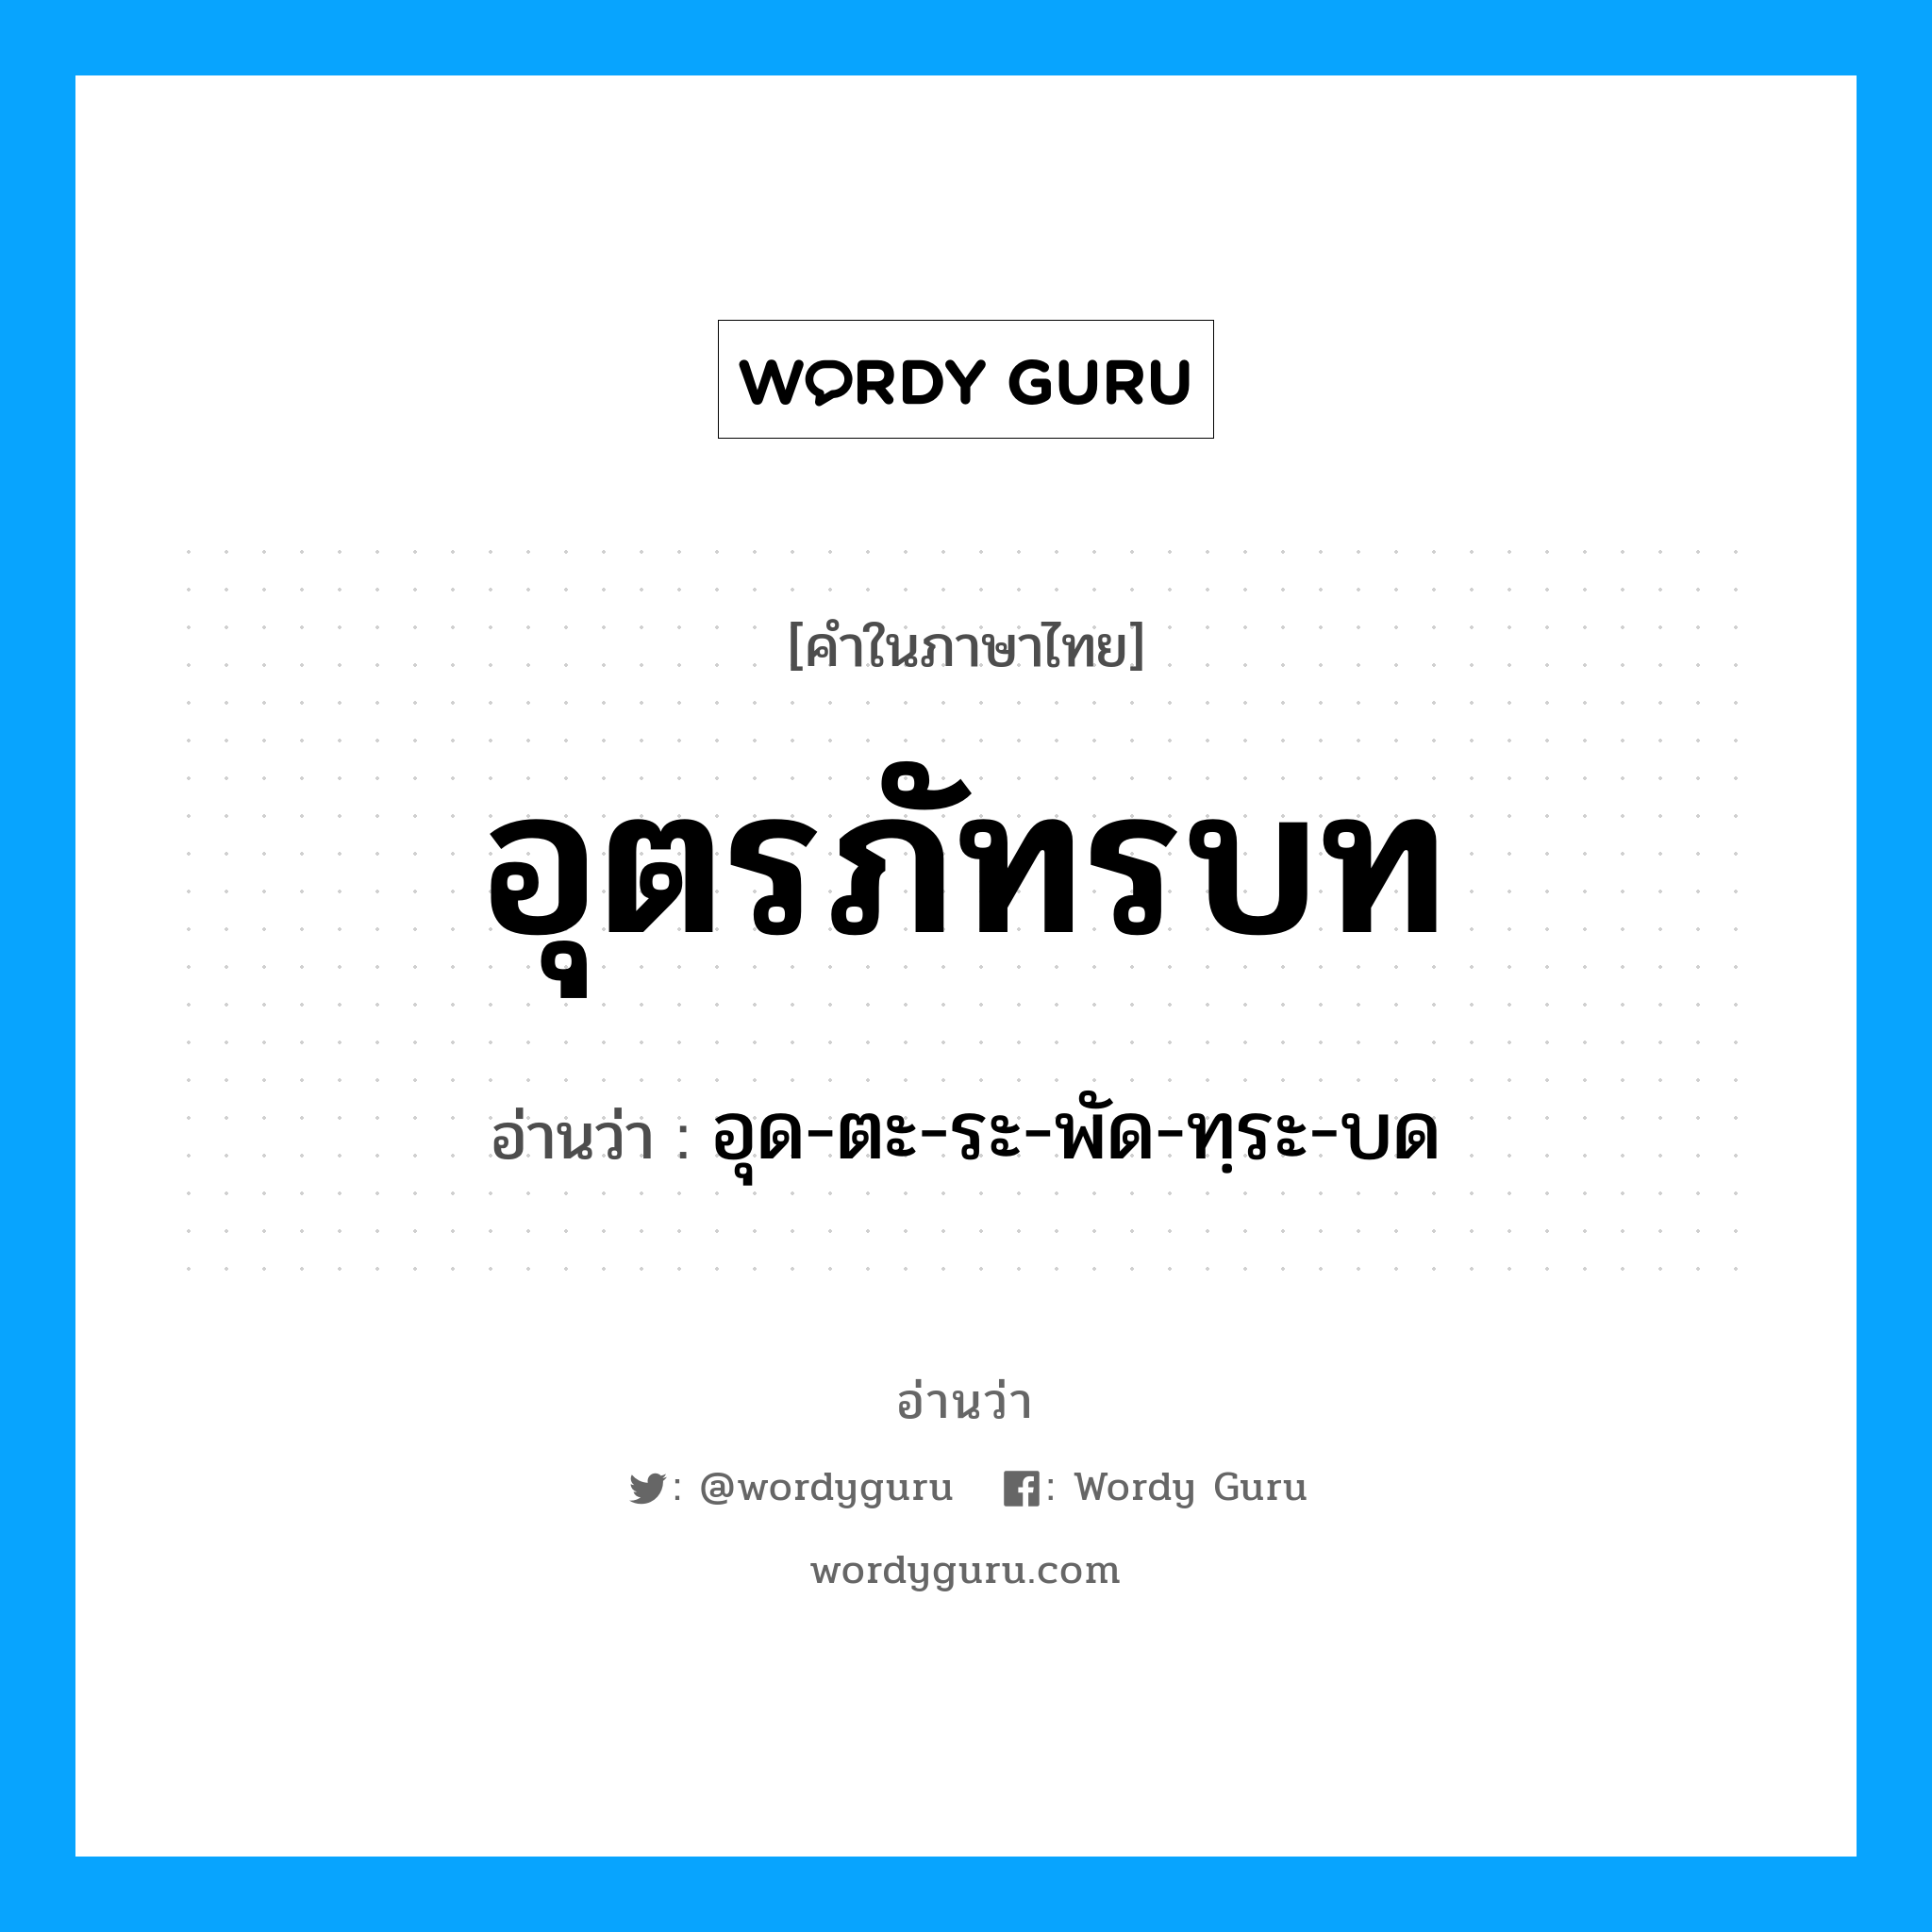 อุด-ตะ-ระ-พัด-ทฺระ-บด เป็นคำอ่านของคำไหน?, คำในภาษาไทย อุด-ตะ-ระ-พัด-ทฺระ-บด อ่านว่า อุตรภัทรบท